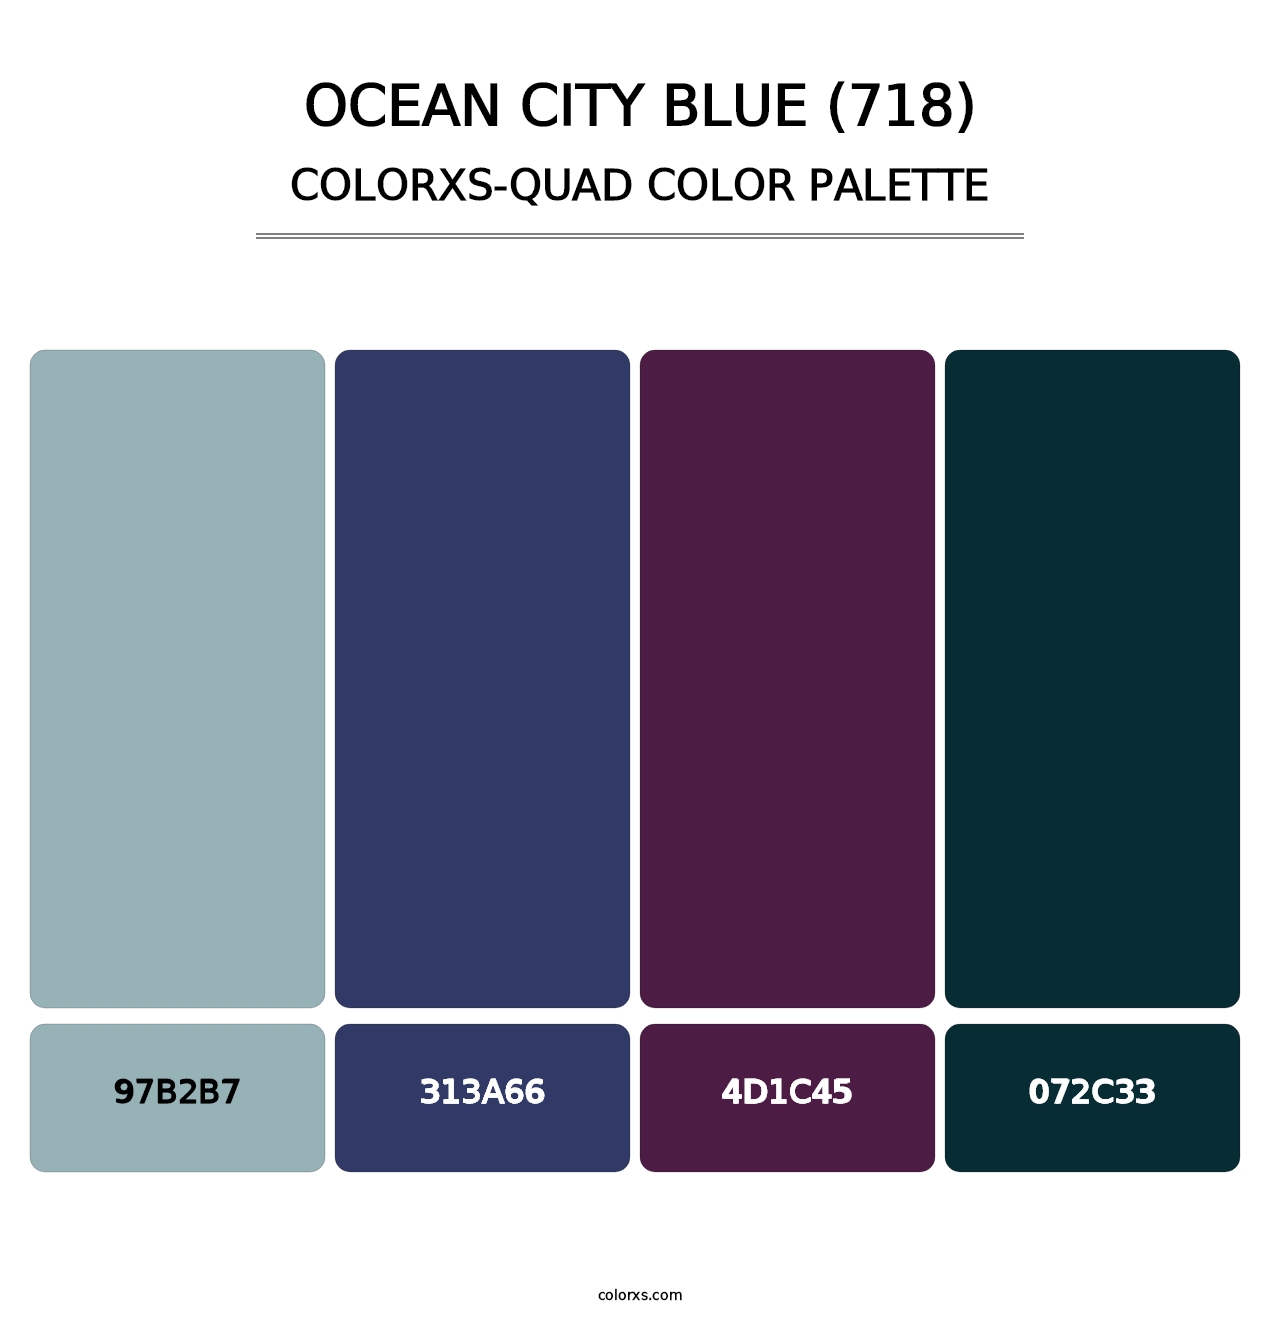 Ocean City Blue (718) - Colorxs Quad Palette